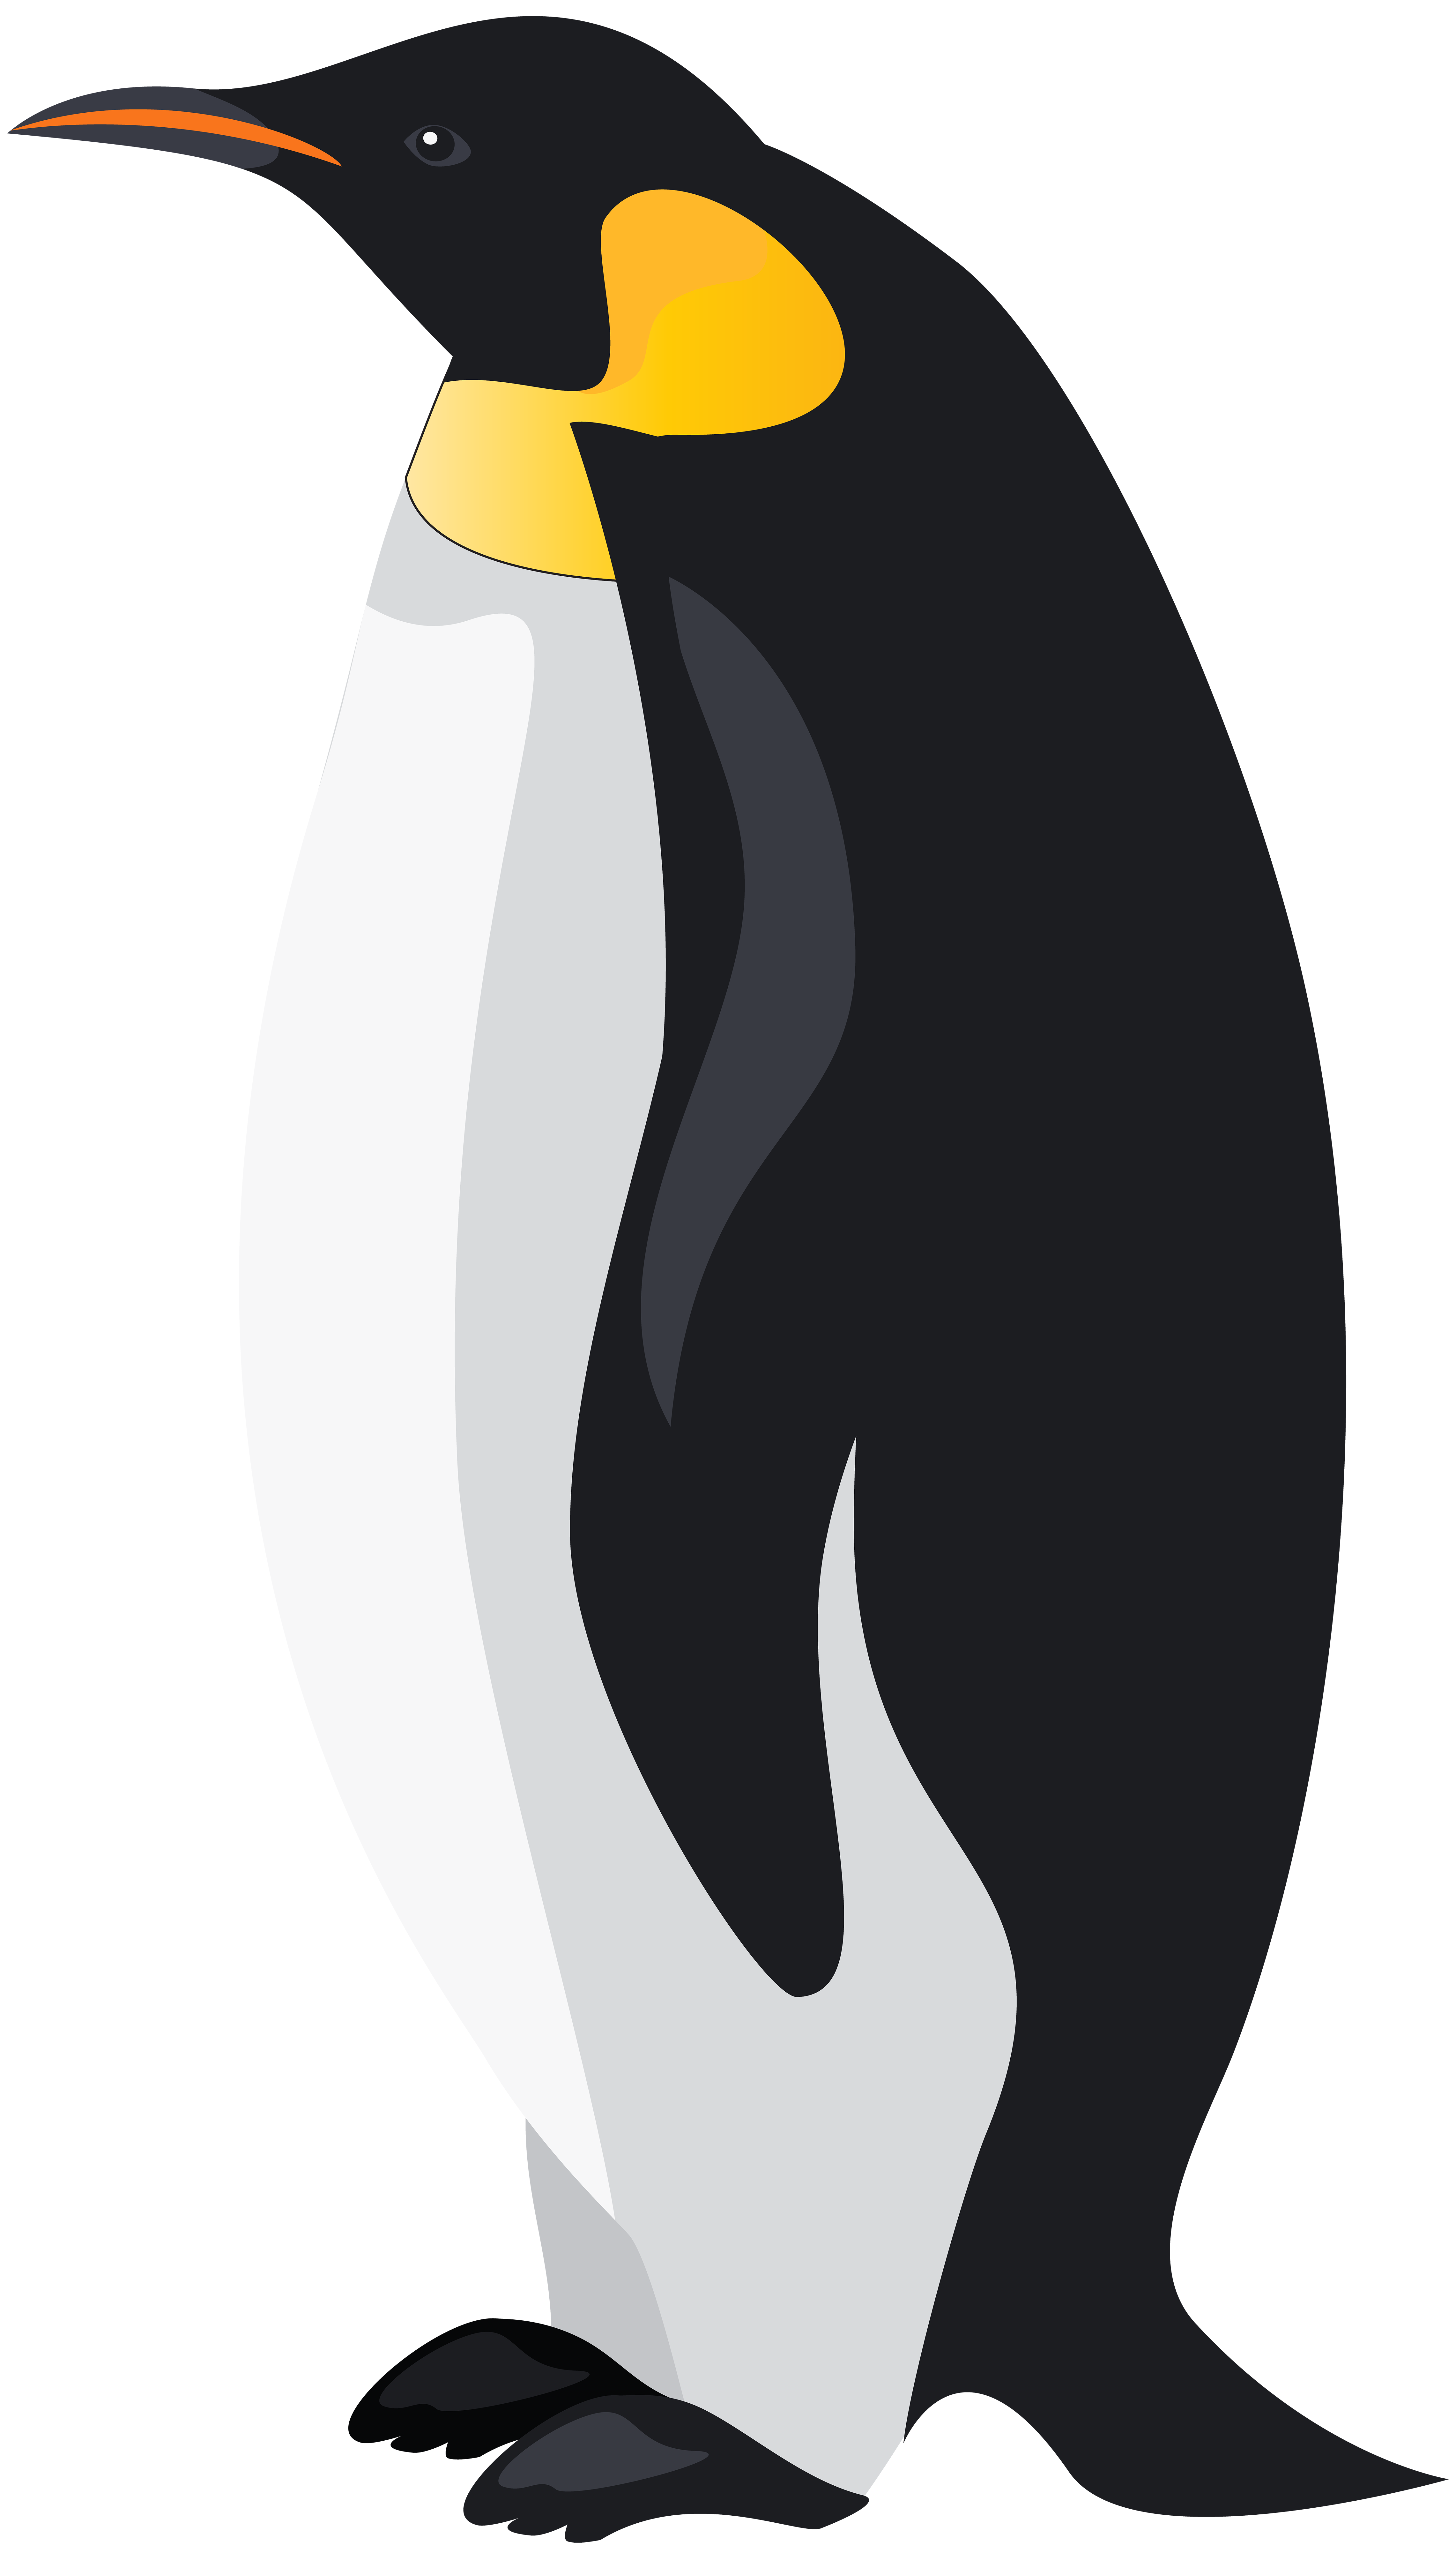 Пингвин картинка для детей на прозрачном фоне. Пингвин на белом фоне. Пингвин рисунок. Пингвин в профиль. Пингвины векторные.